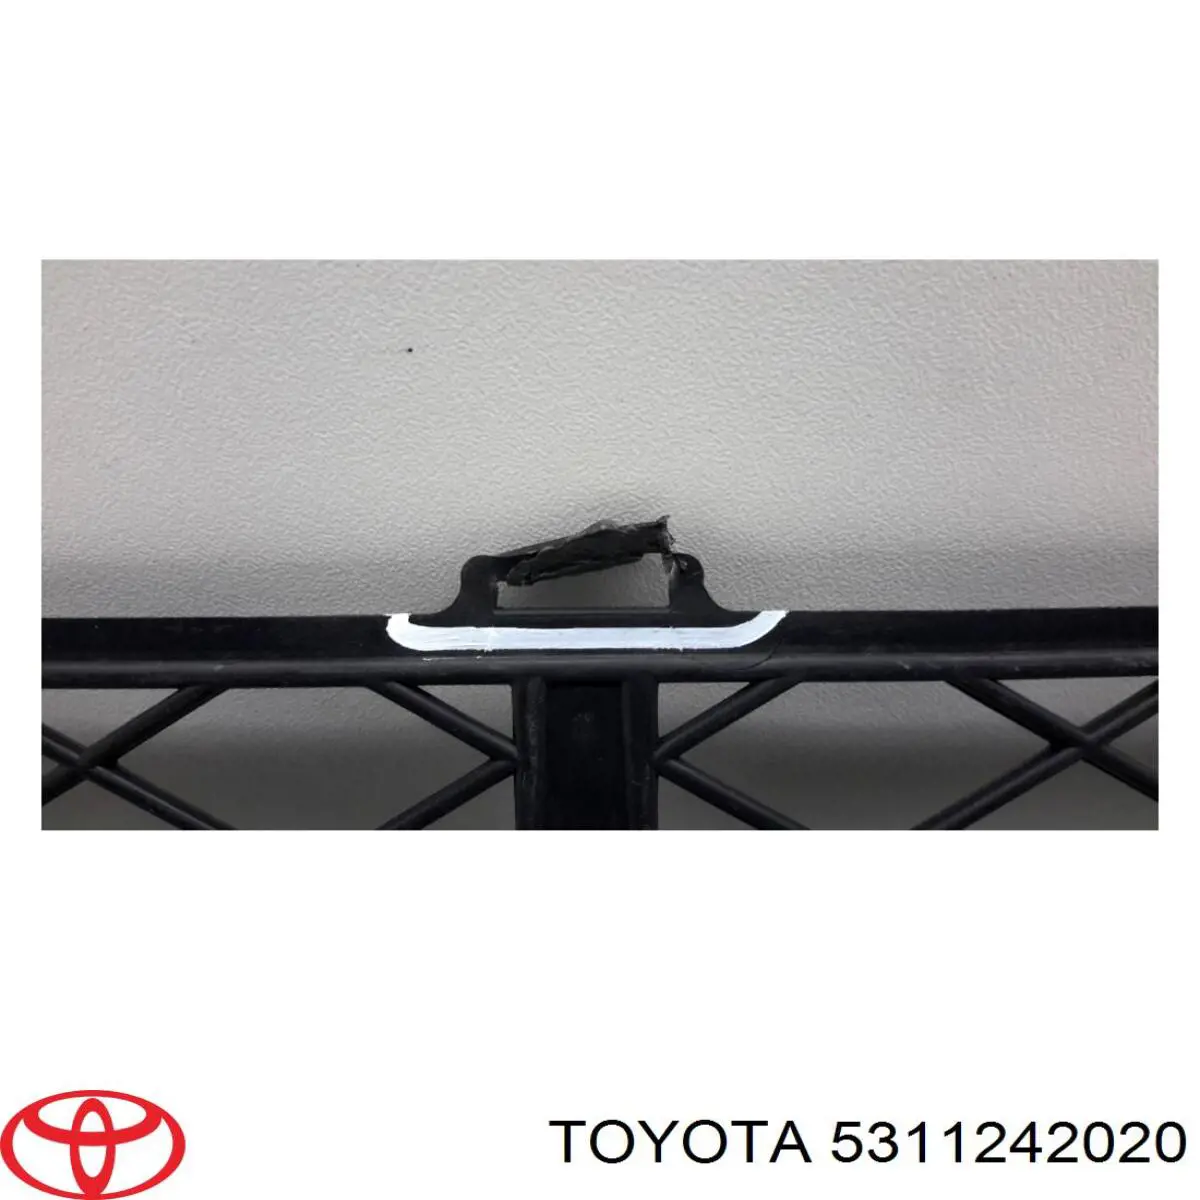 5311242020 Toyota rejilla de ventilación, parachoques delantero, inferior